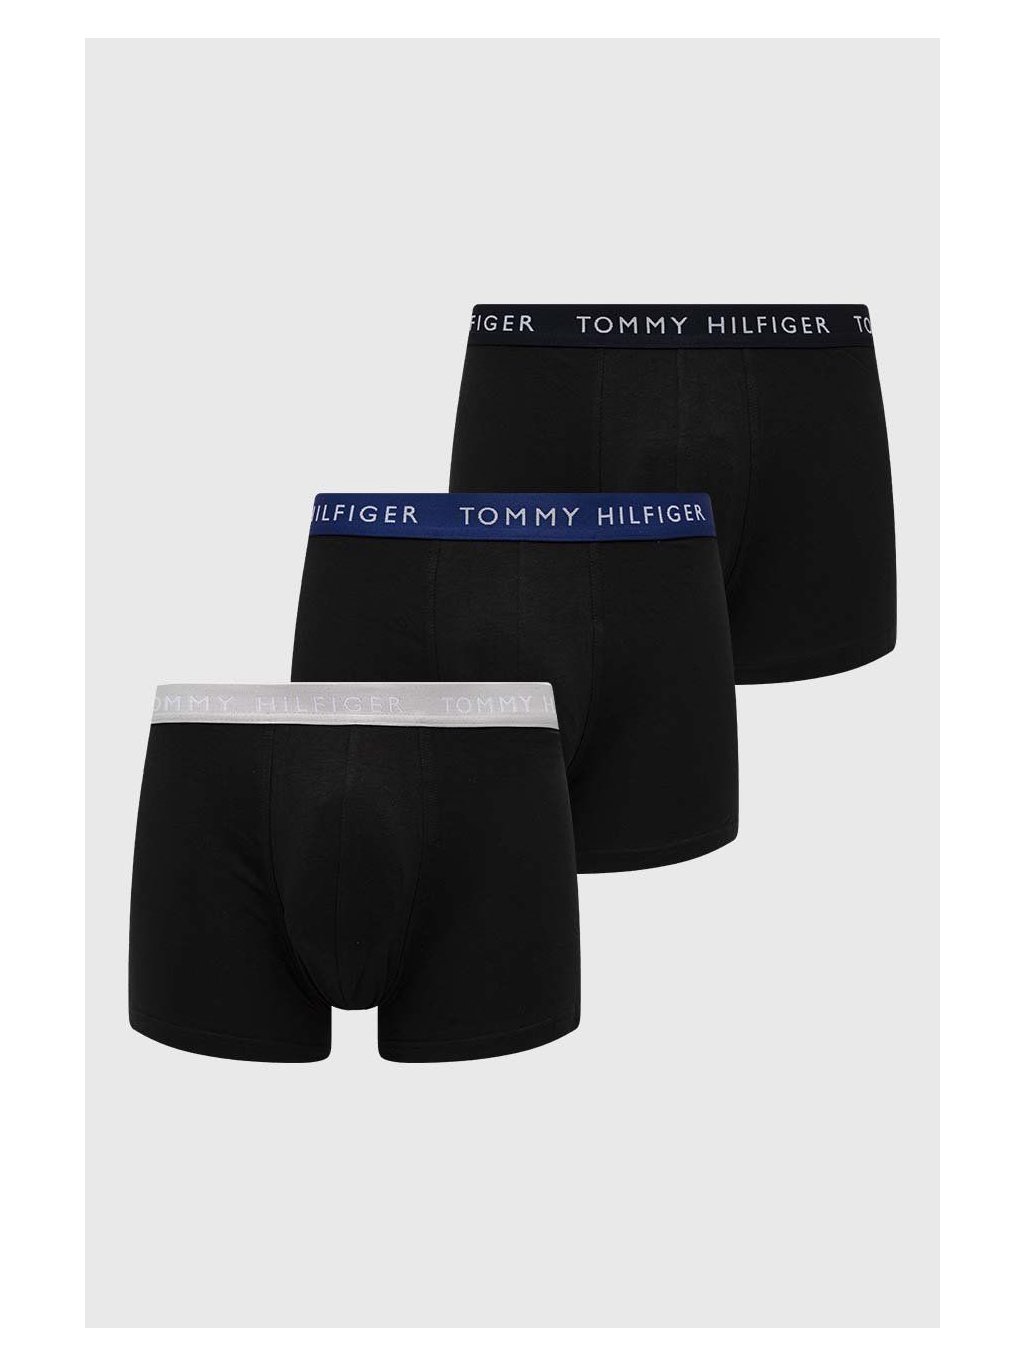 Tommy Hilfiger pánské boxerky 3pack černé - FASHION AVENUE